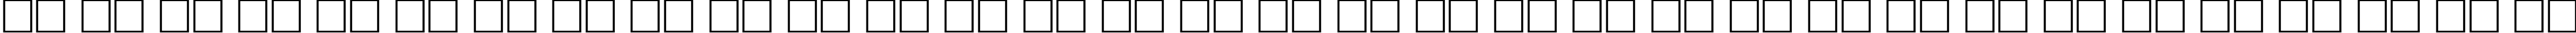 Пример написания русского алфавита шрифтом Antiqua90n